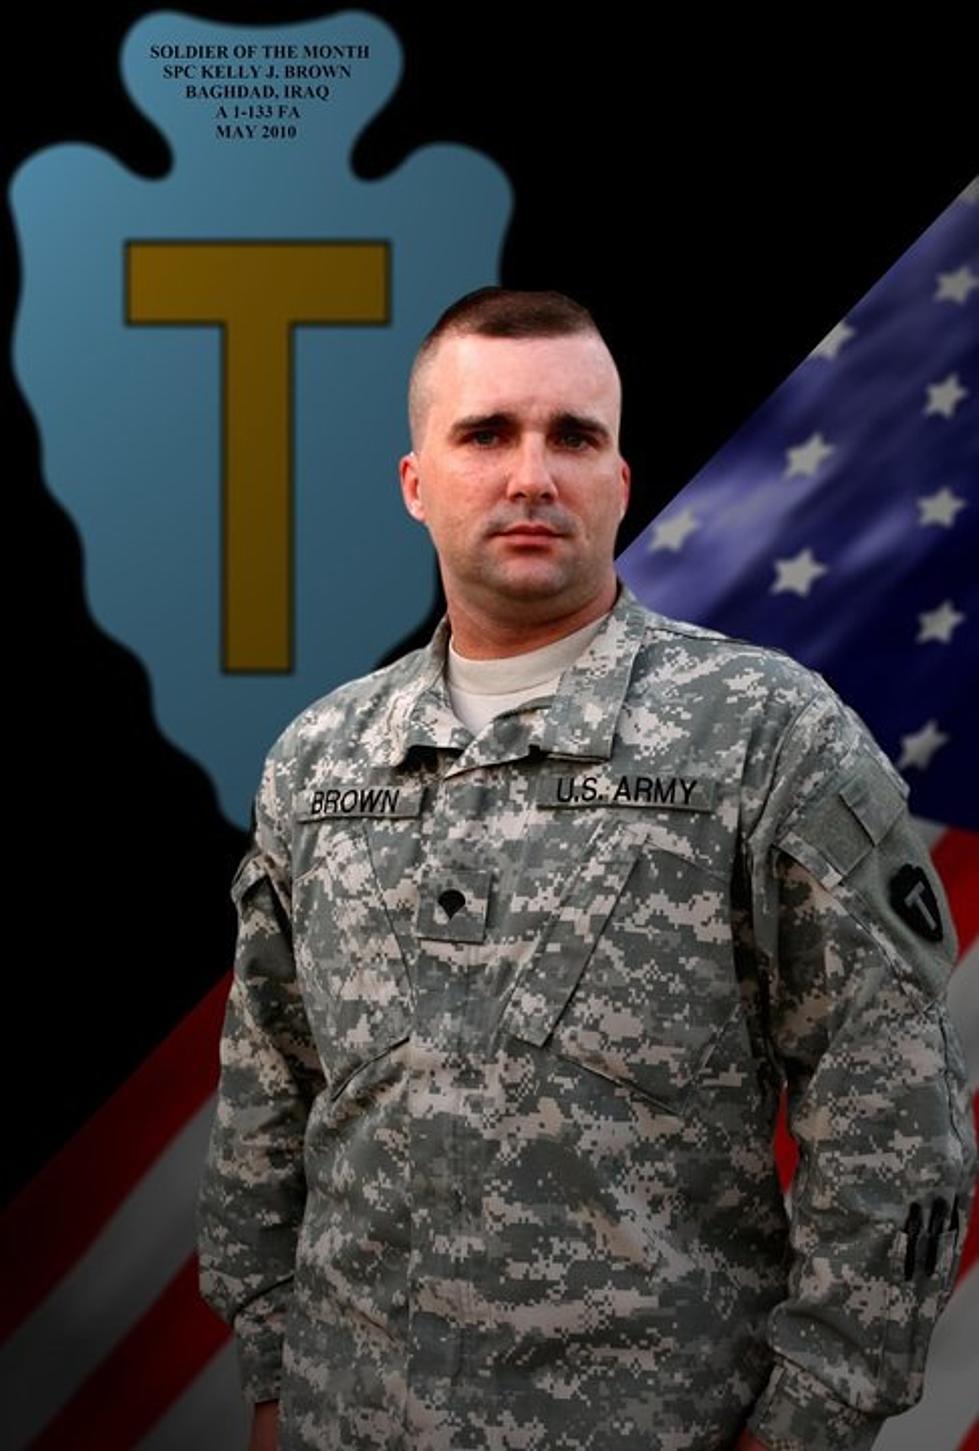 KNUE ‘Hometown Hero’ of the Week: Army Sgt. Kelly Brown of Kilgore